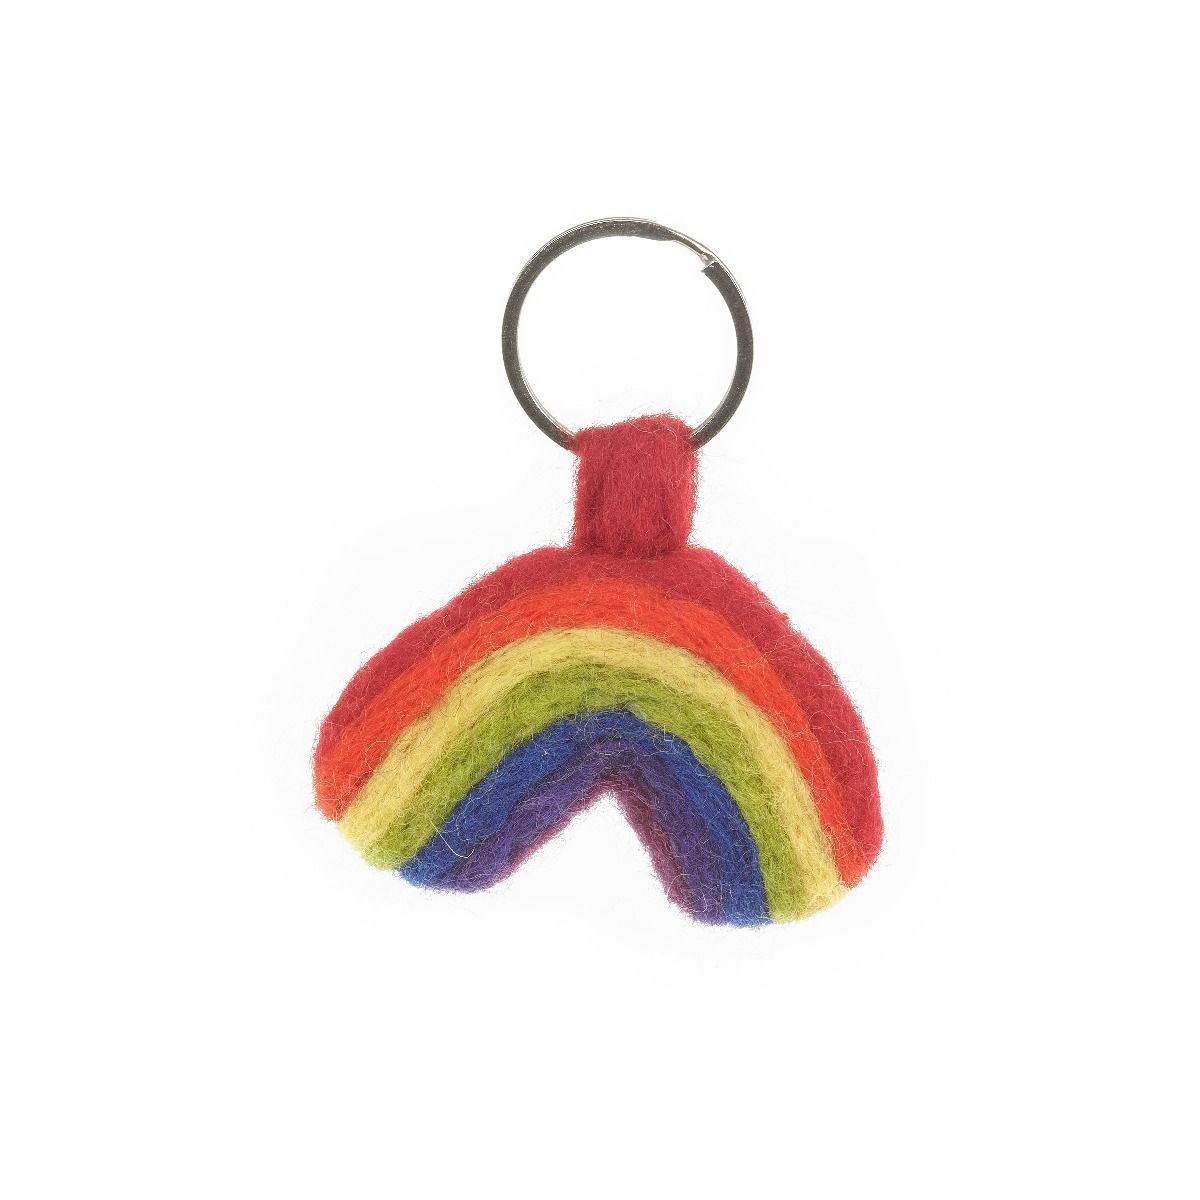 Handmade Needle Felt Rainbow Keyring